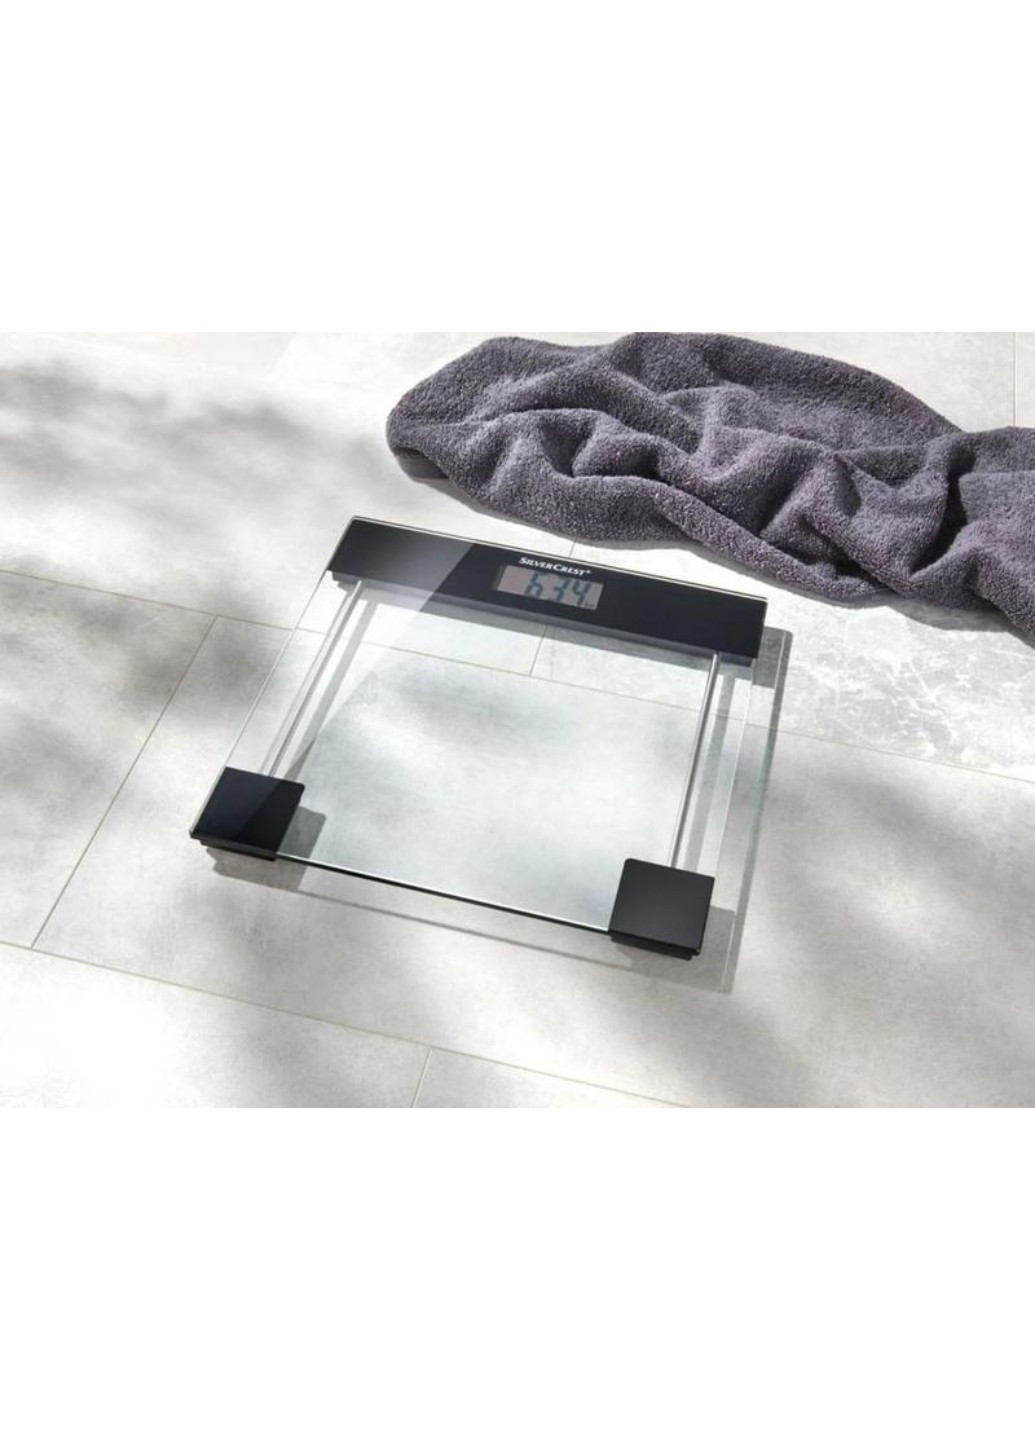 Ваги скляні підлогові з 4-сенсорною технологією SPWE 180 A1 Silver Crest (267501451)